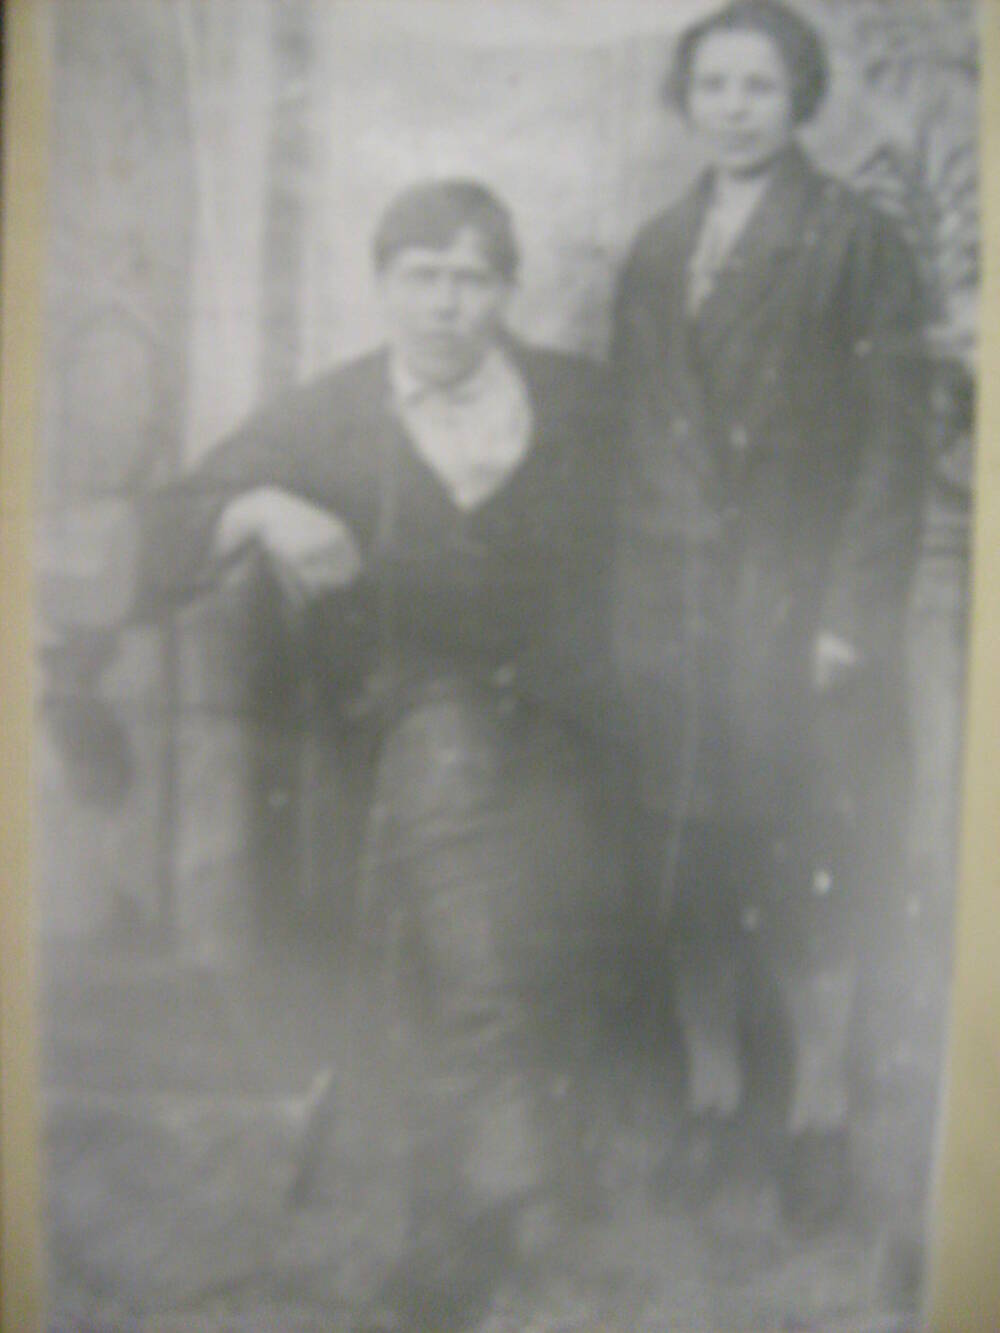 Фотография - Первые колхозники - Пономарев Василий Федорович и его жена Мария Марковна